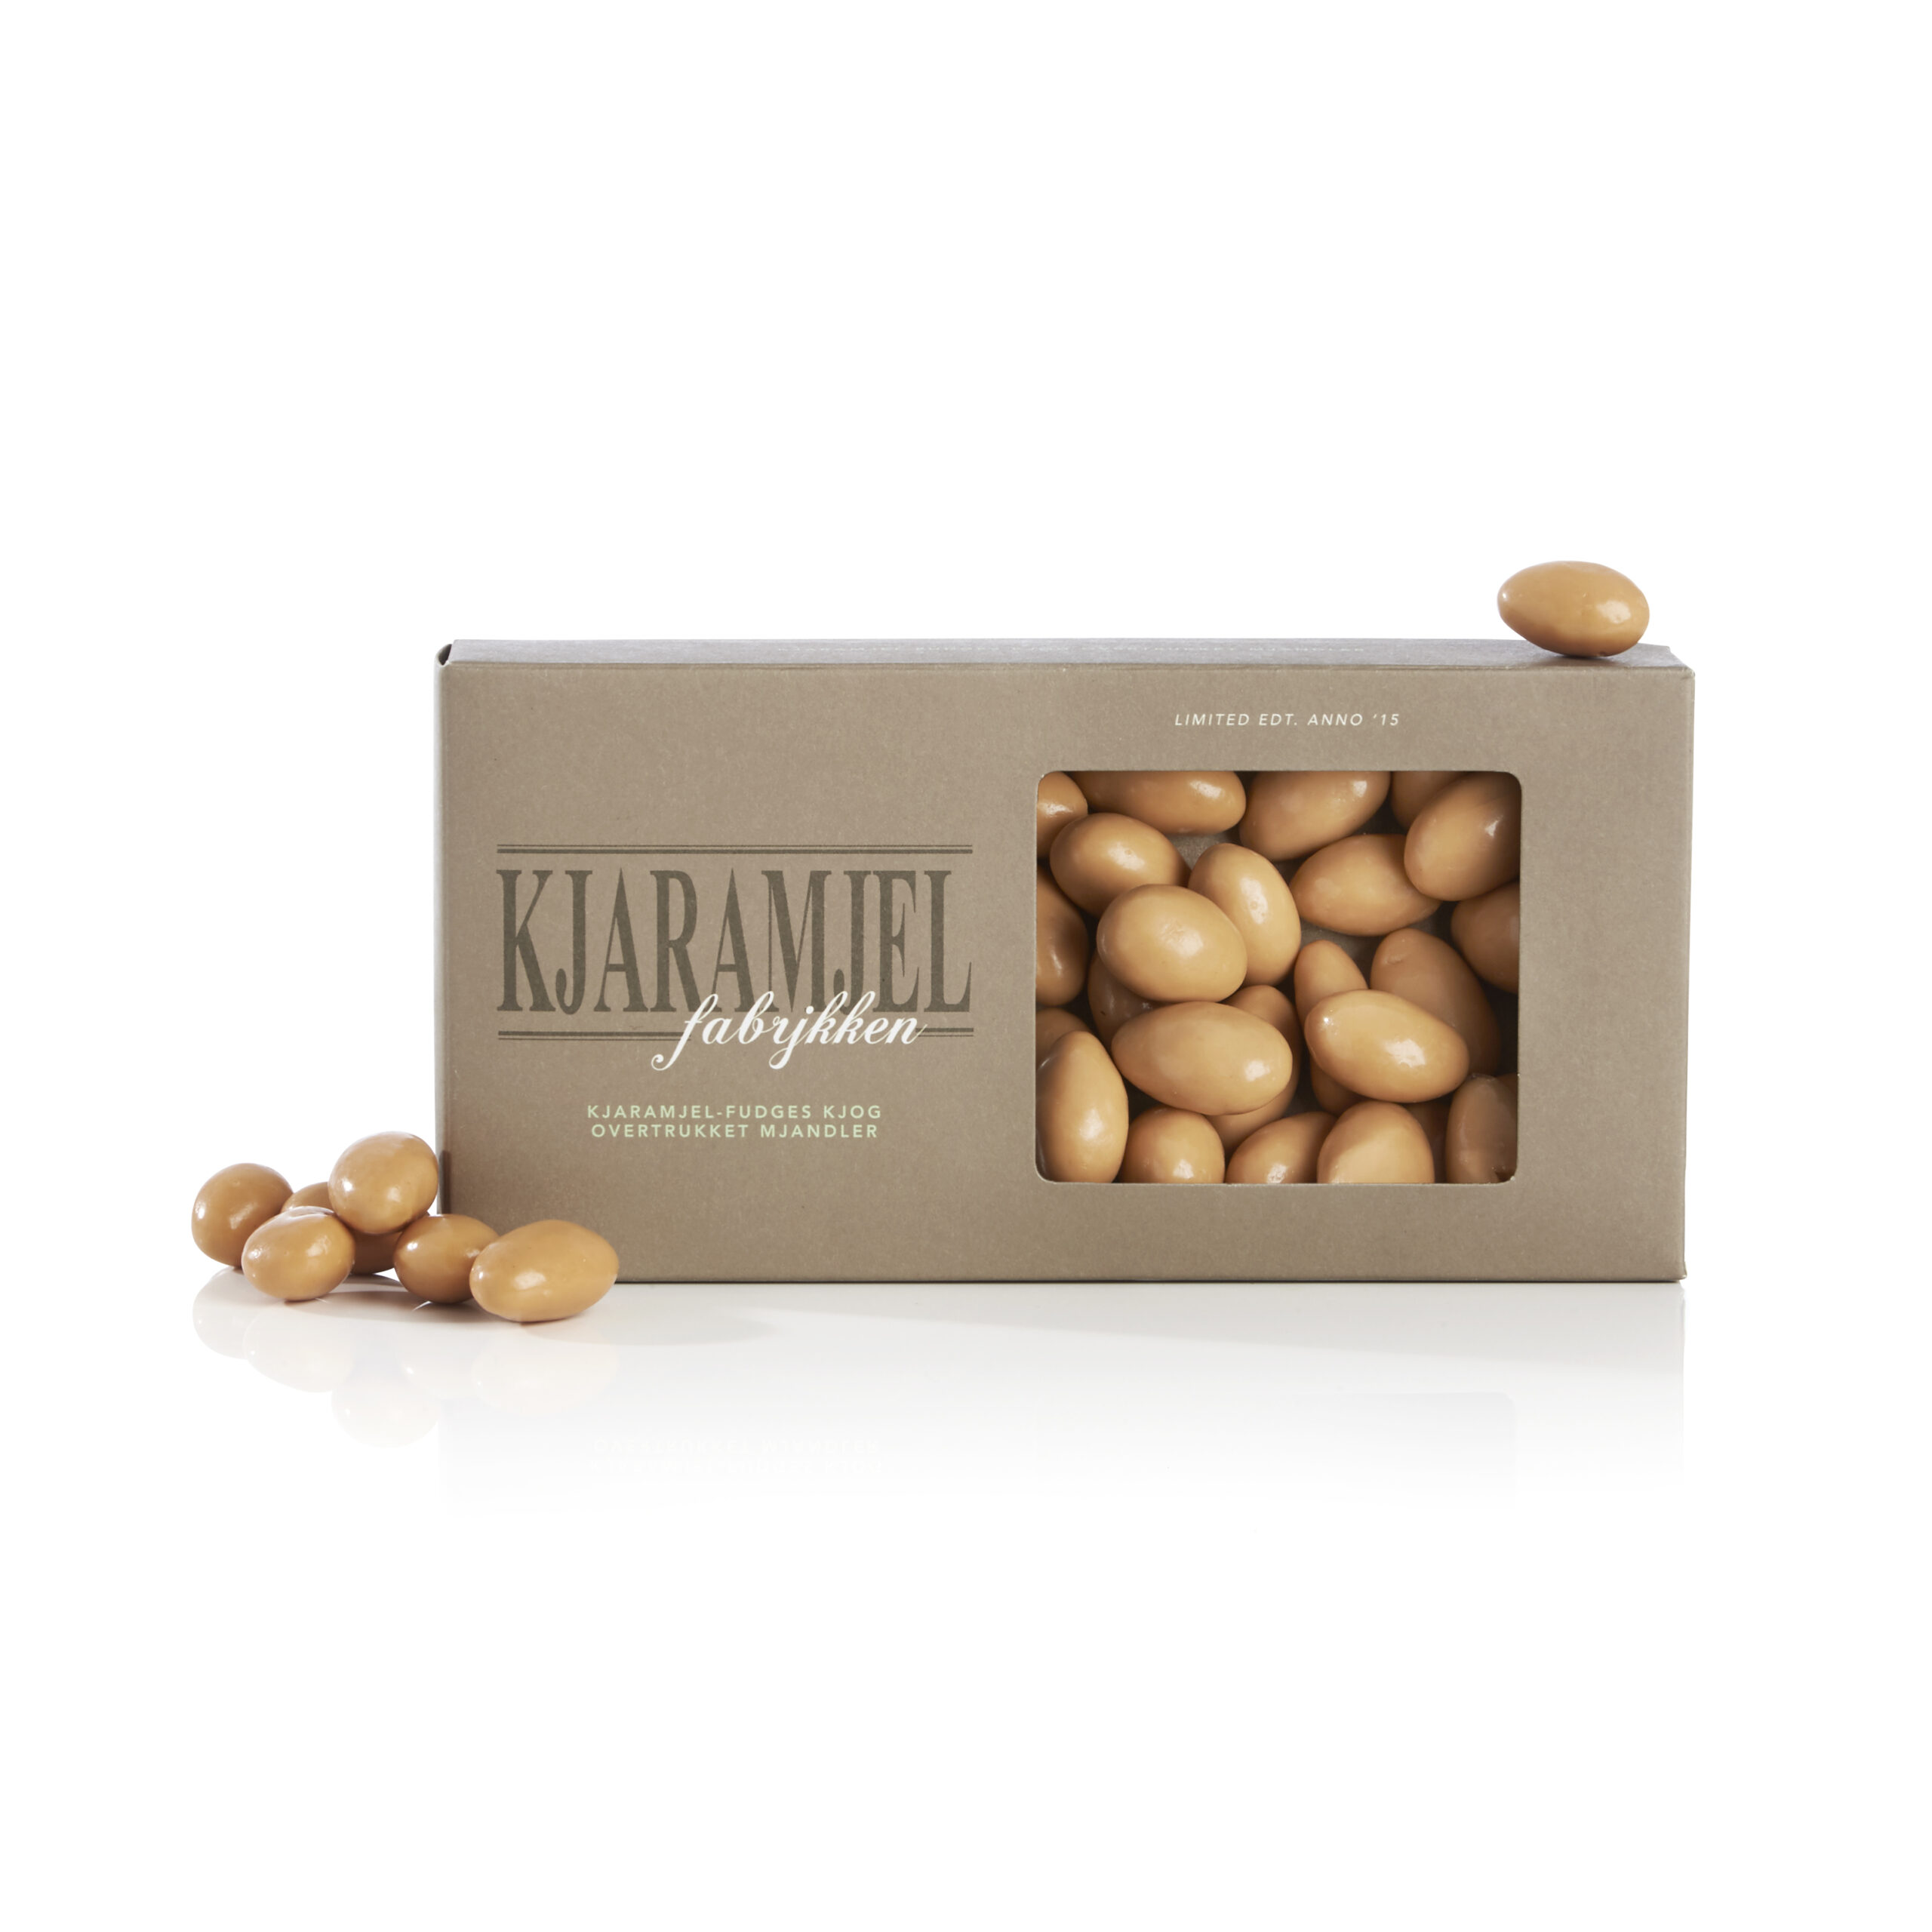 #2 - Kjaramjel-fudge mandler - Mandler m/ karamel fudge